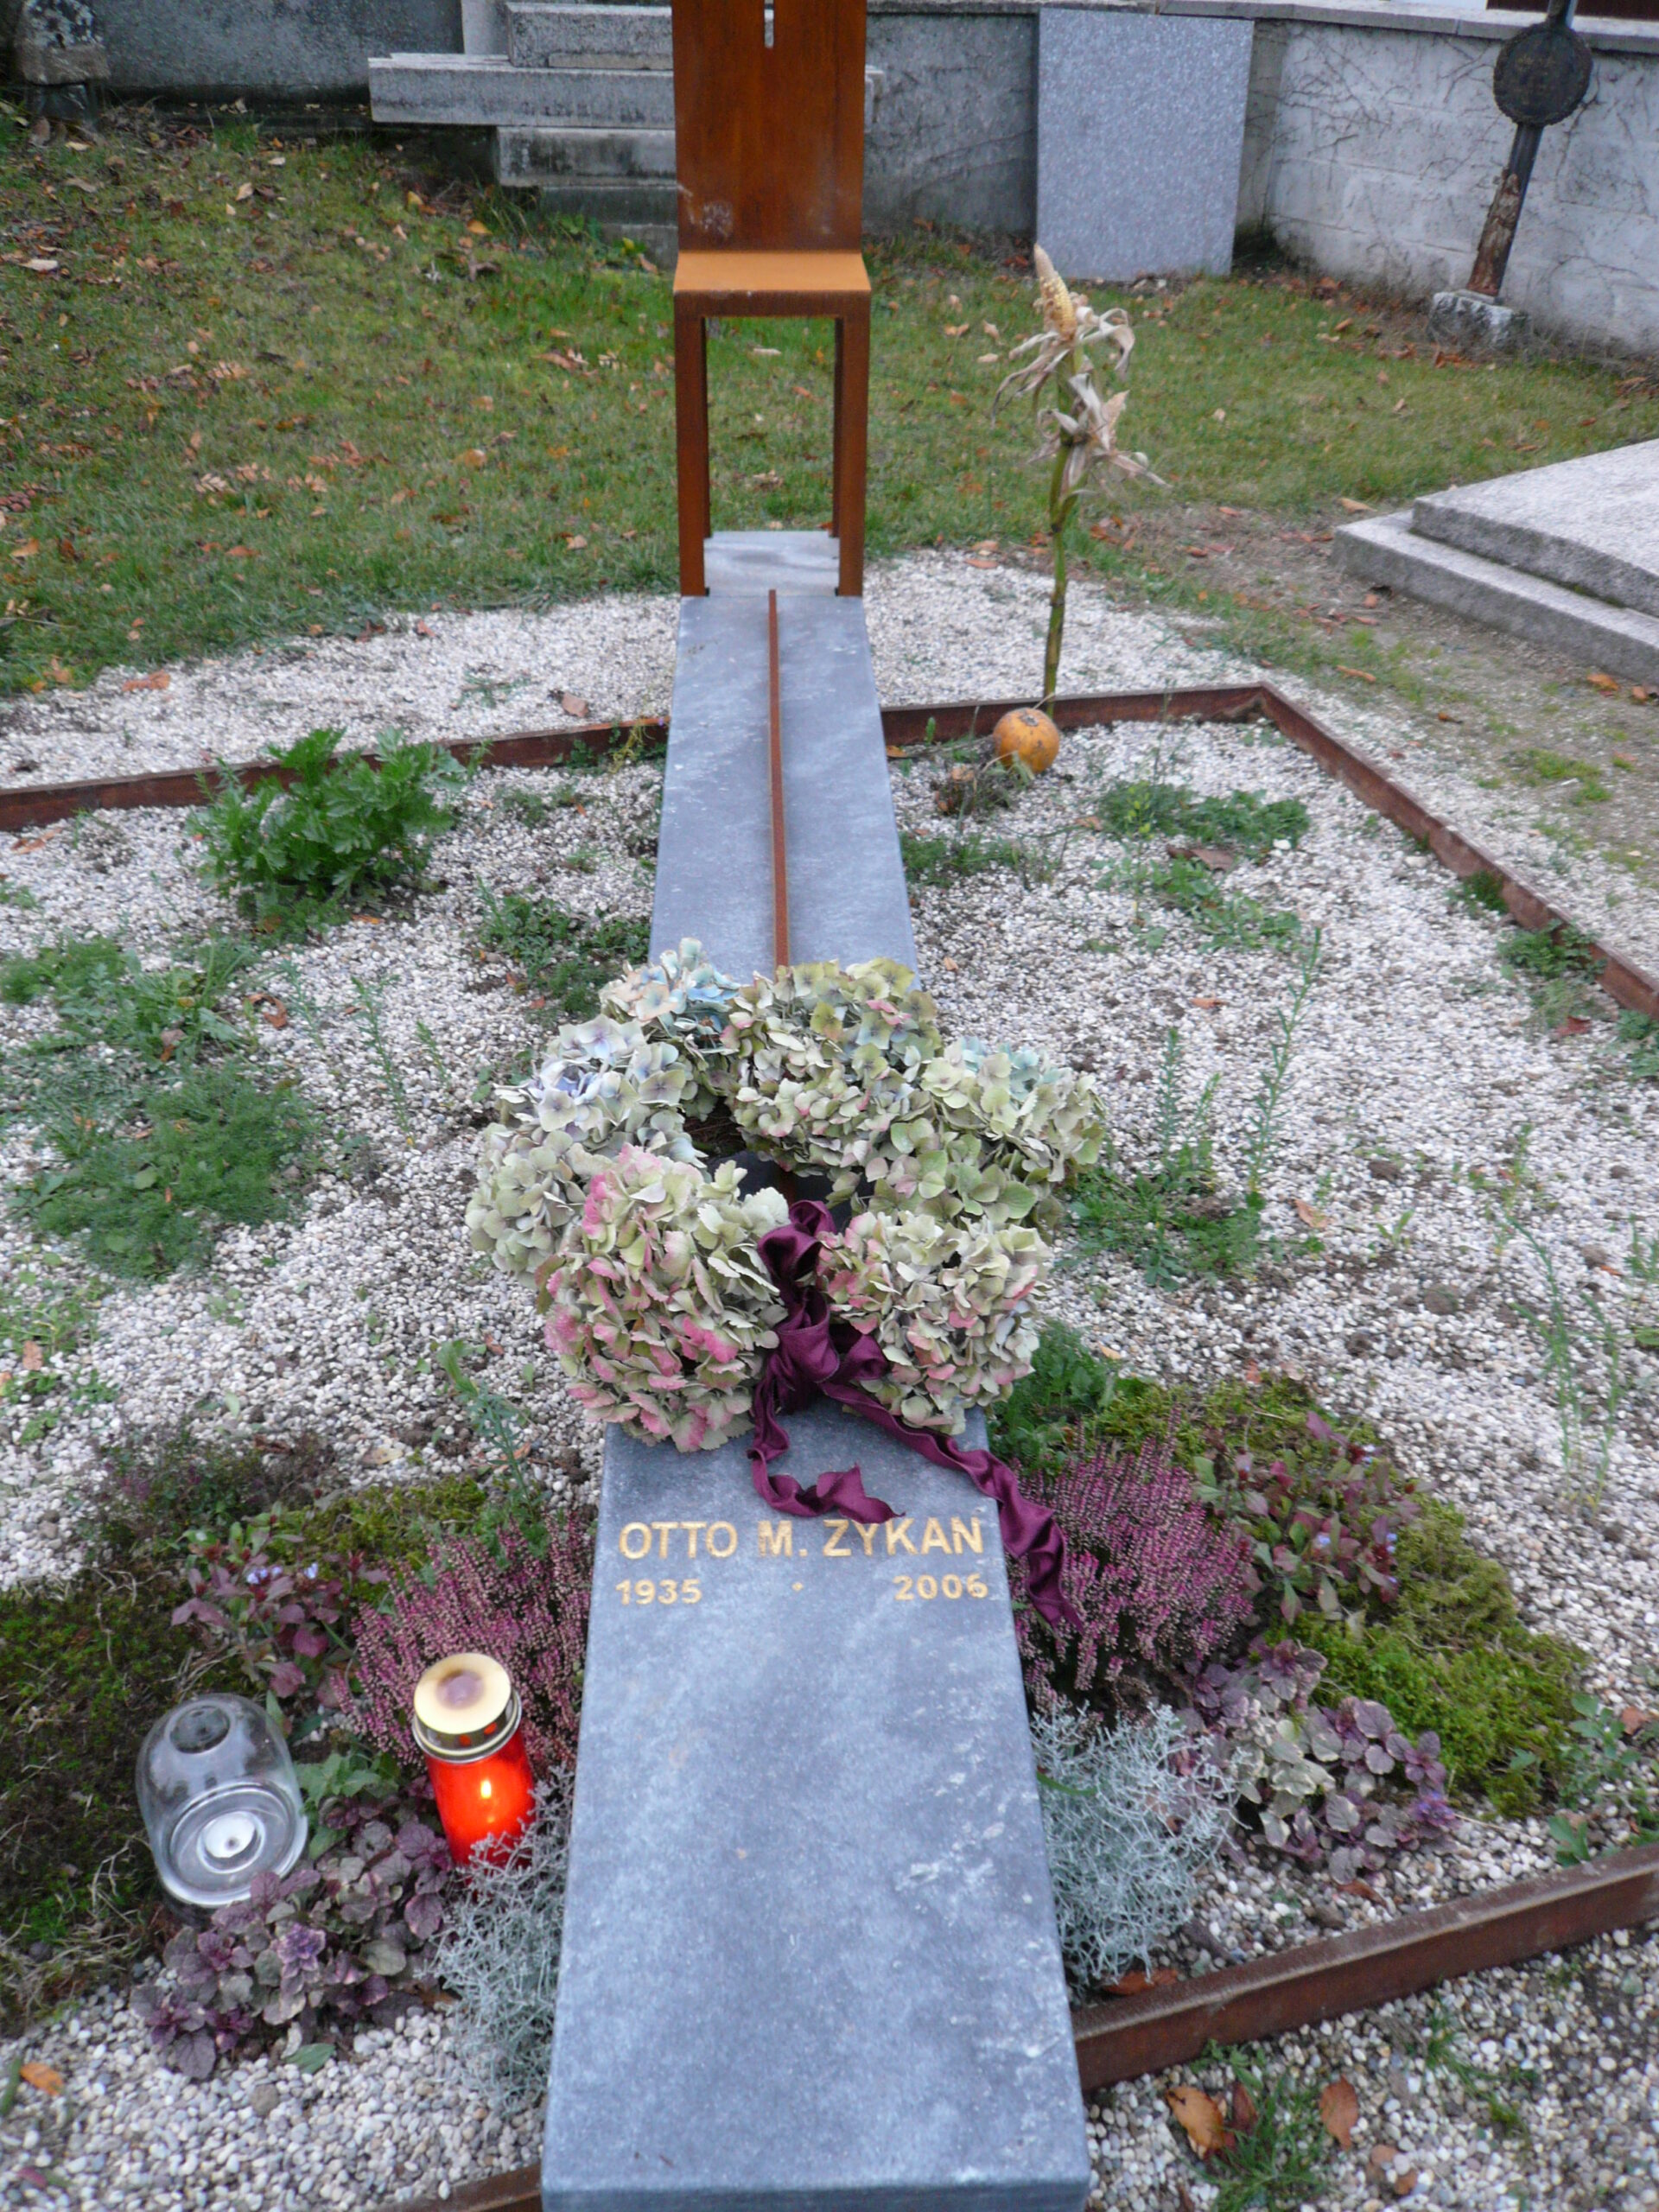 Friedhof Reinprechtspölla, Niederösterreich, Grab Otto M. Zykan